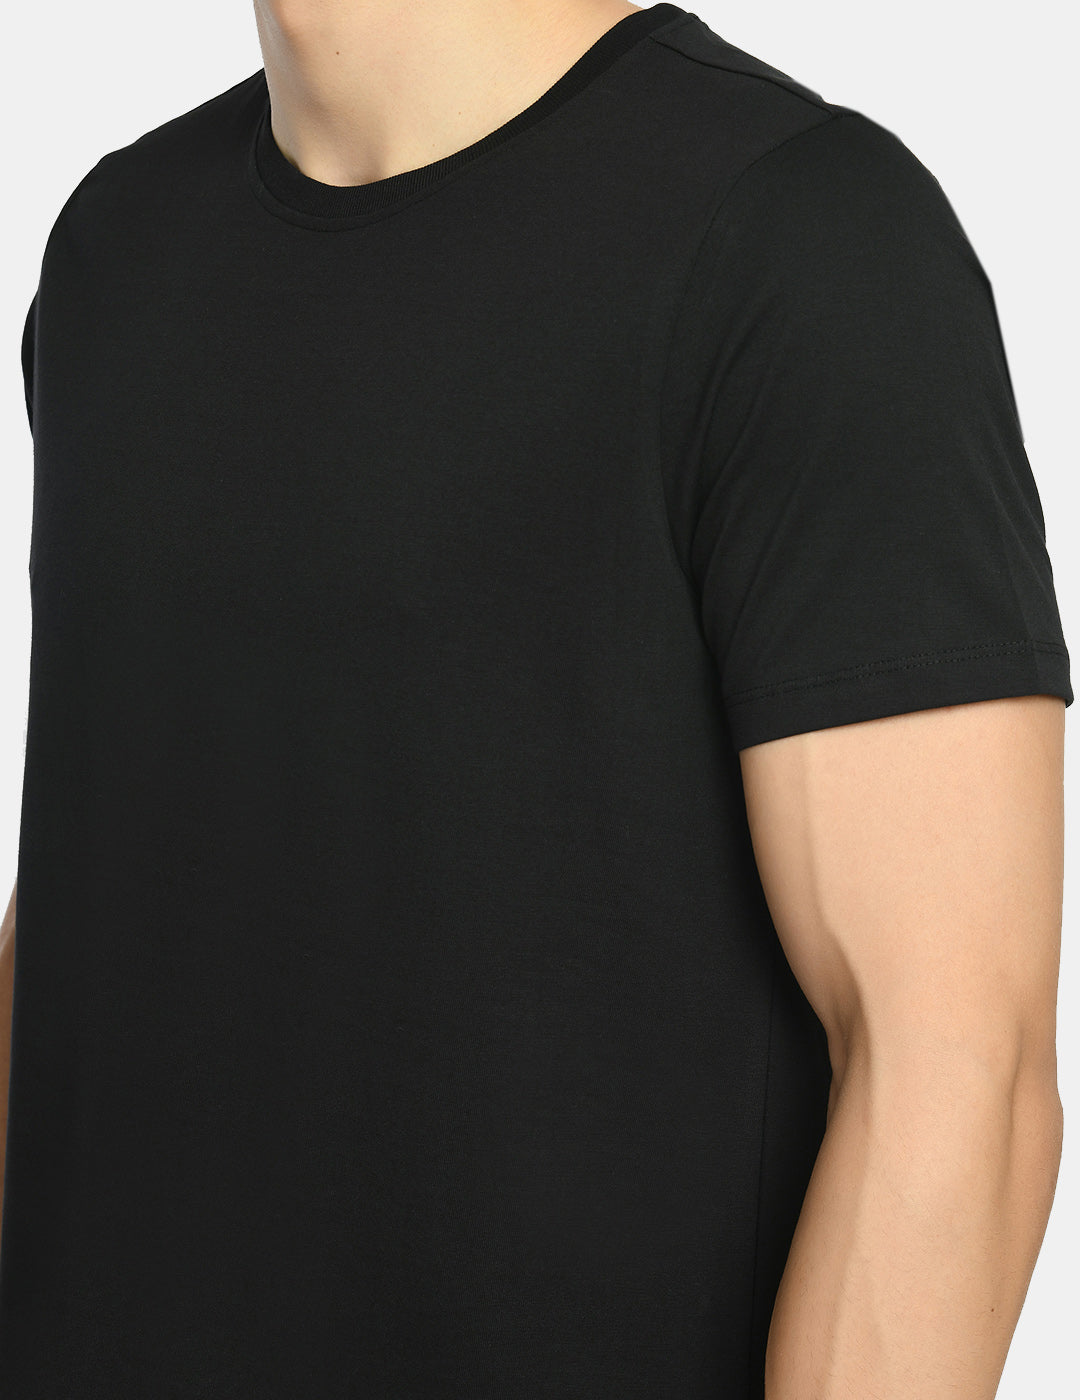 Men's Midnight Black Round Neck T-Shirt